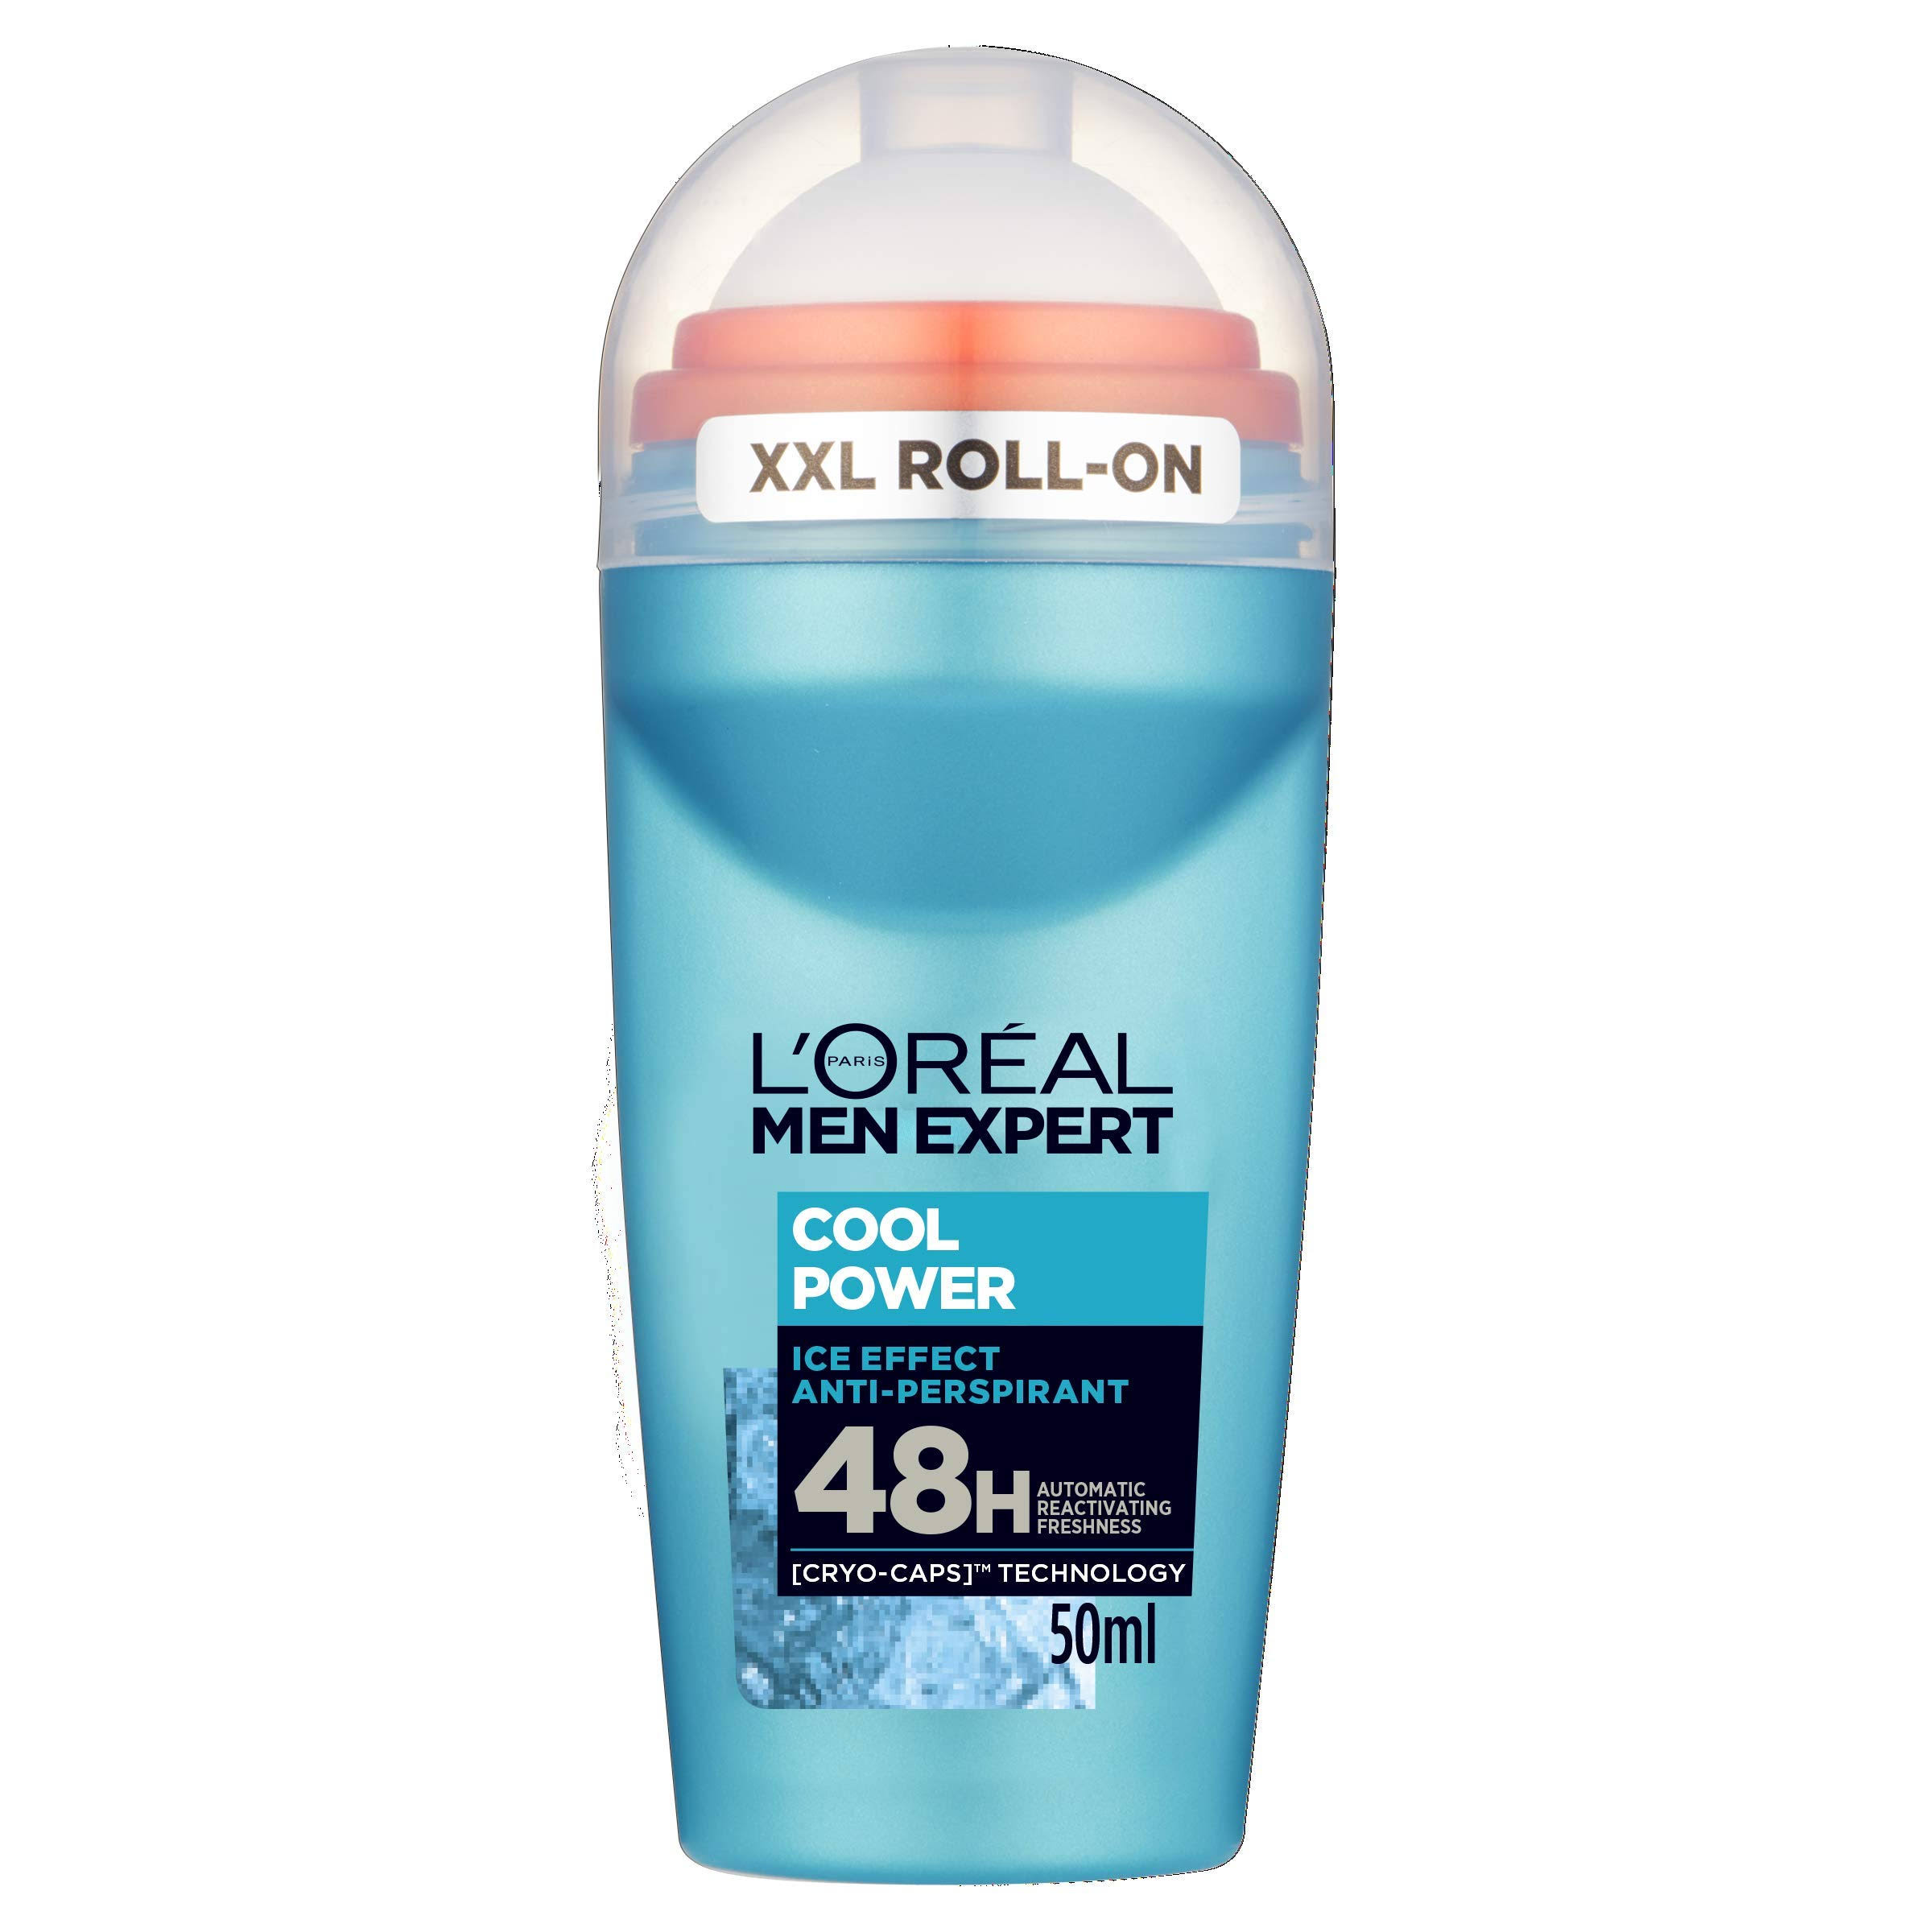 L'Oreal Men Expert Cool Power 48H Anti Perspirant Deodorant - 50ml